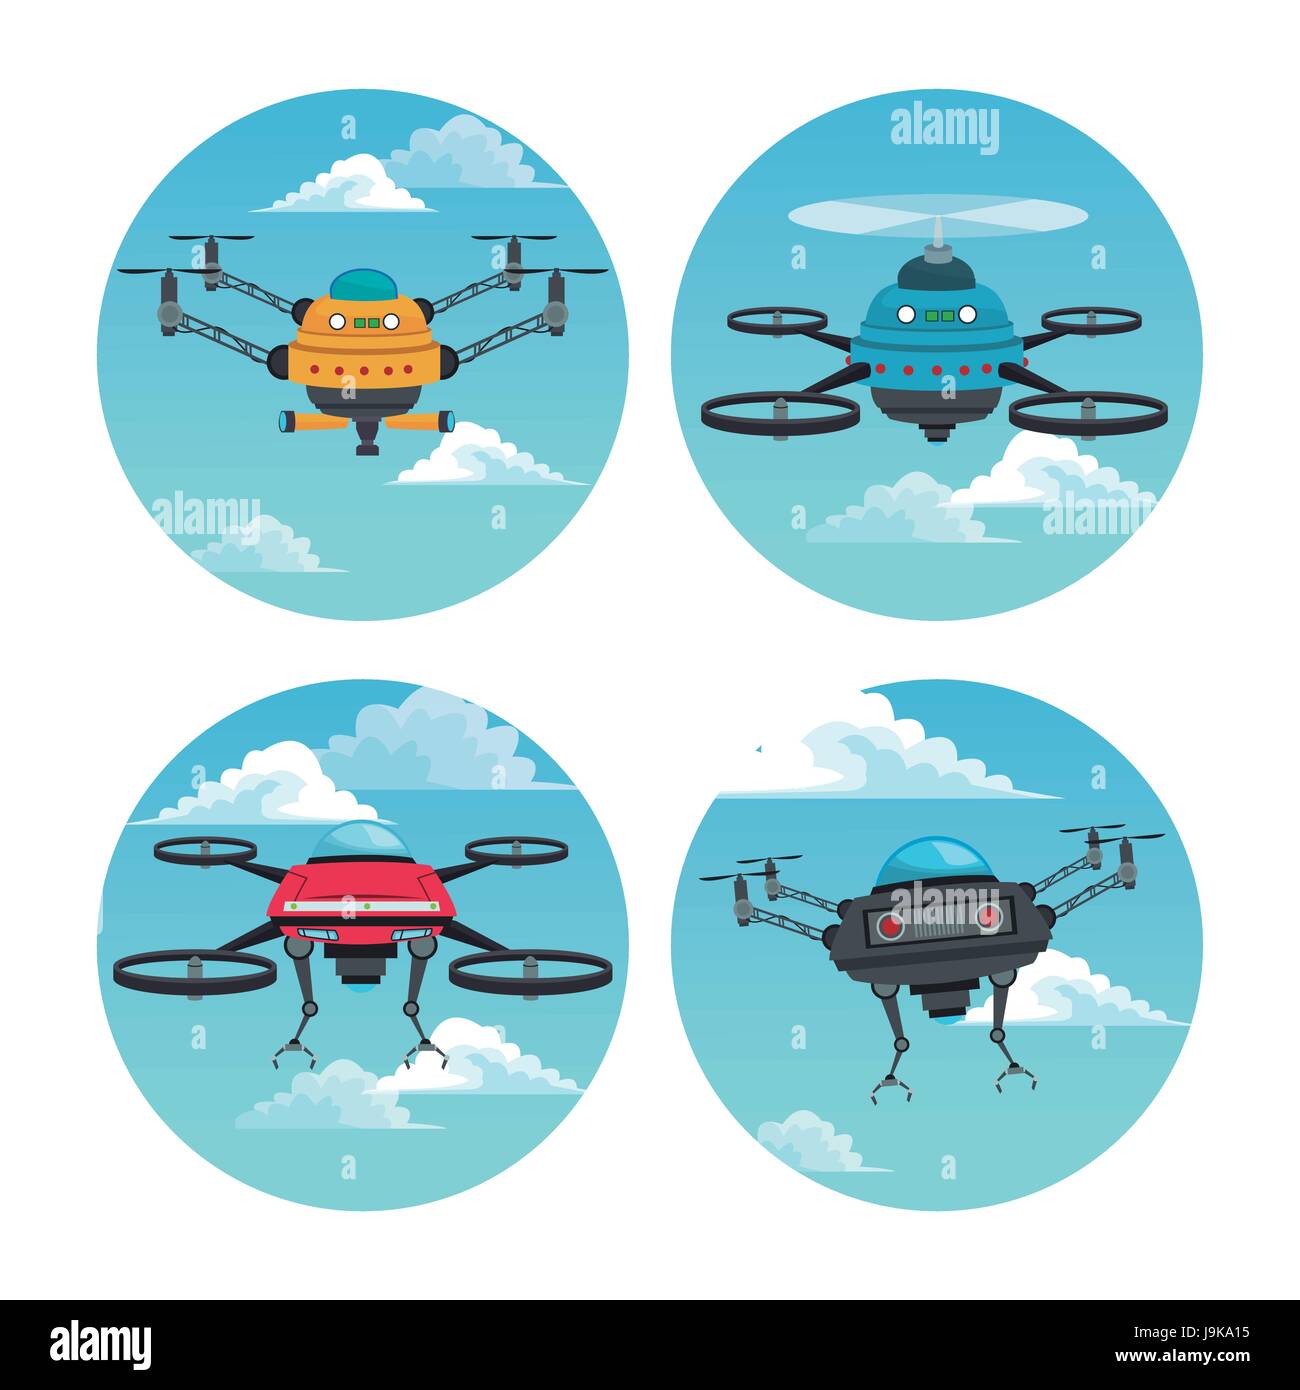 Définir le cadre circulaire avec sky landscape scene et robot drone avec hélice Illustration de Vecteur